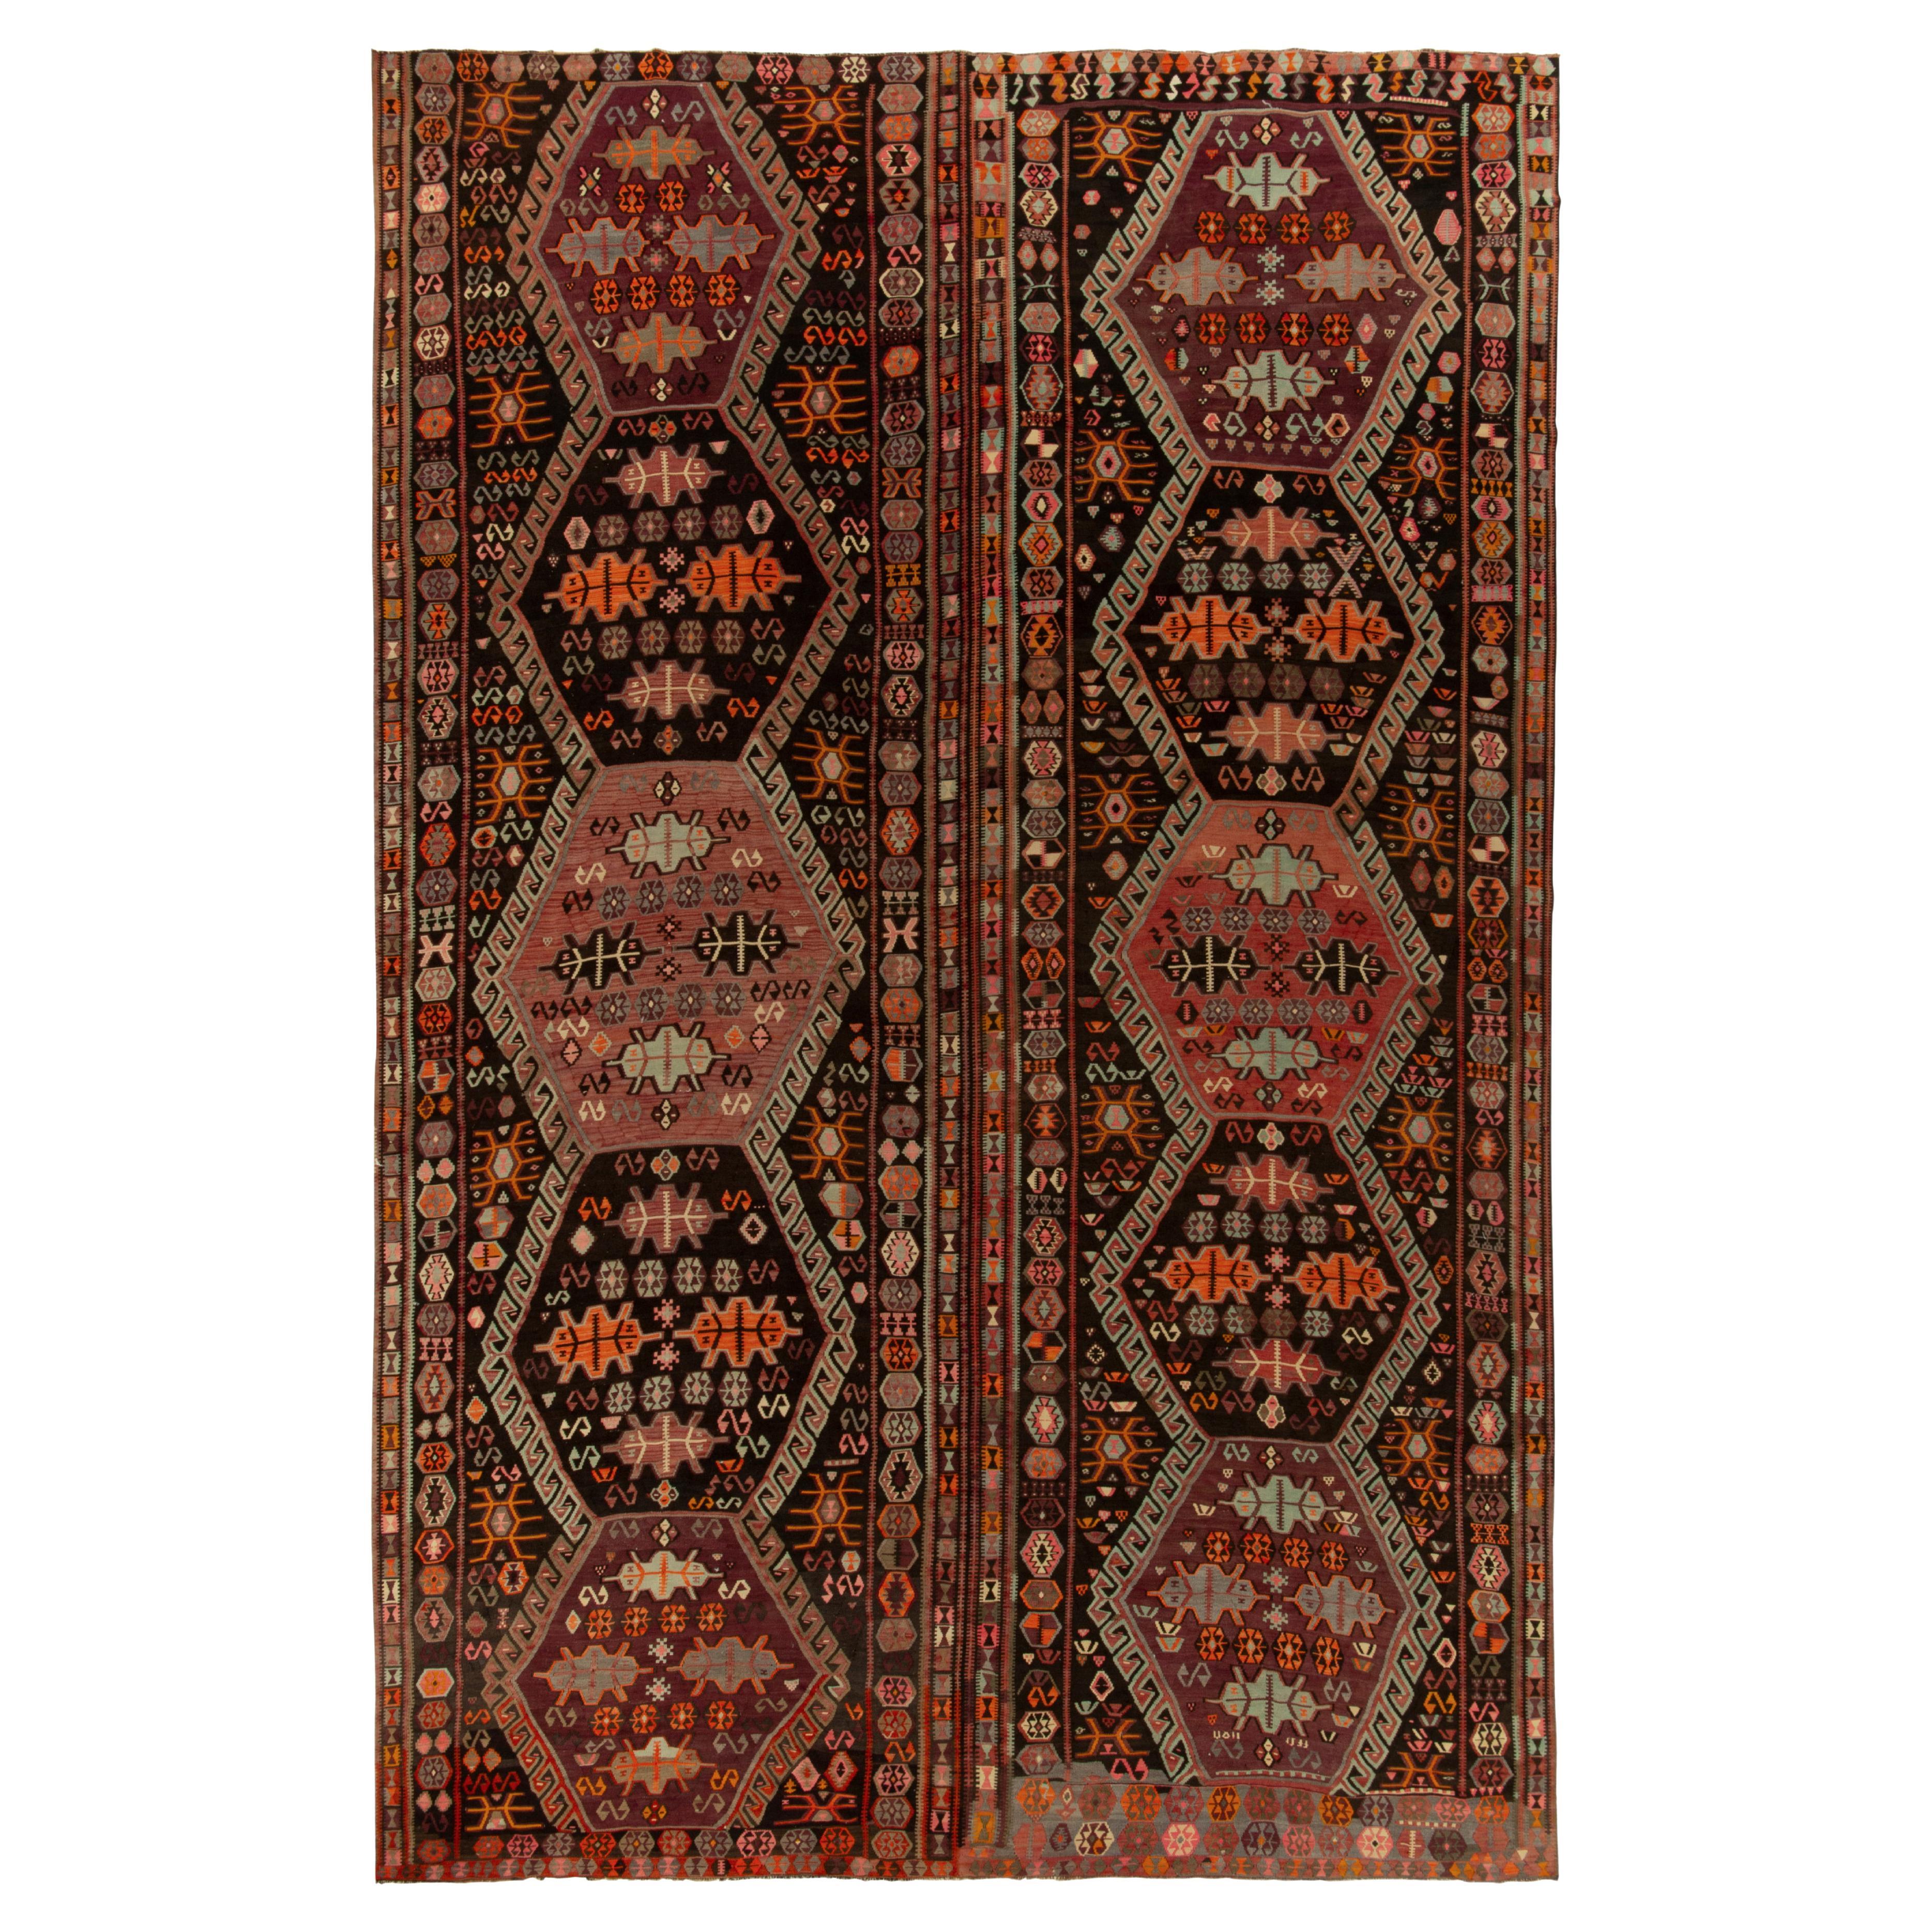 Rare Vintage Kilim Rug in Brown, Orange, Tribal Geometric Pattern by Rug & Kilim